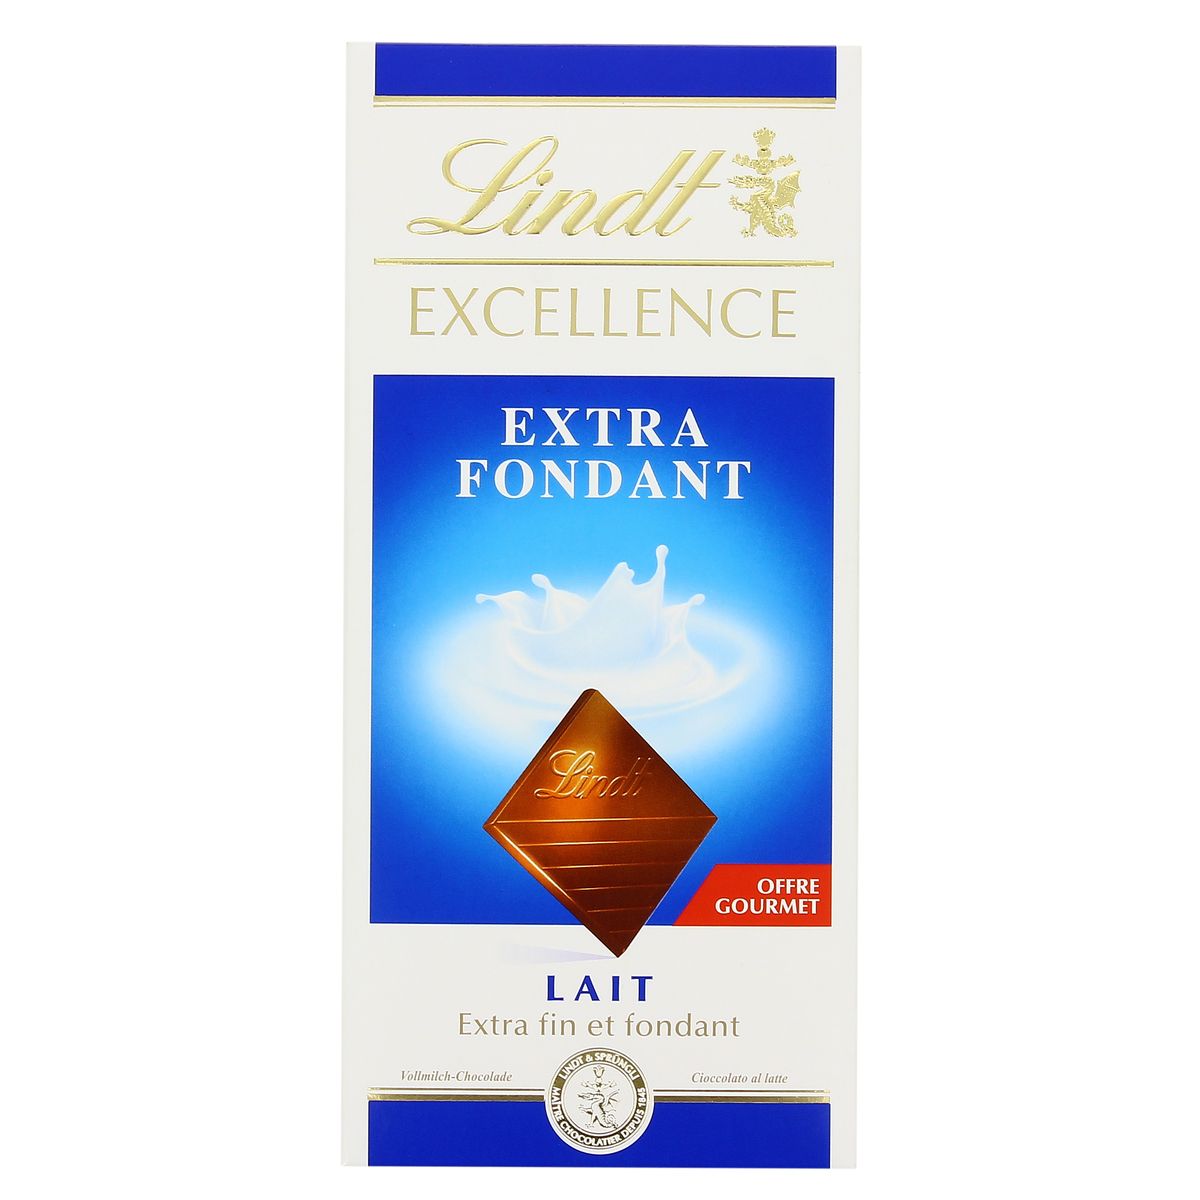 Achat / Vente Promotion Lindt Chocolat au lait extra fondant, 100g